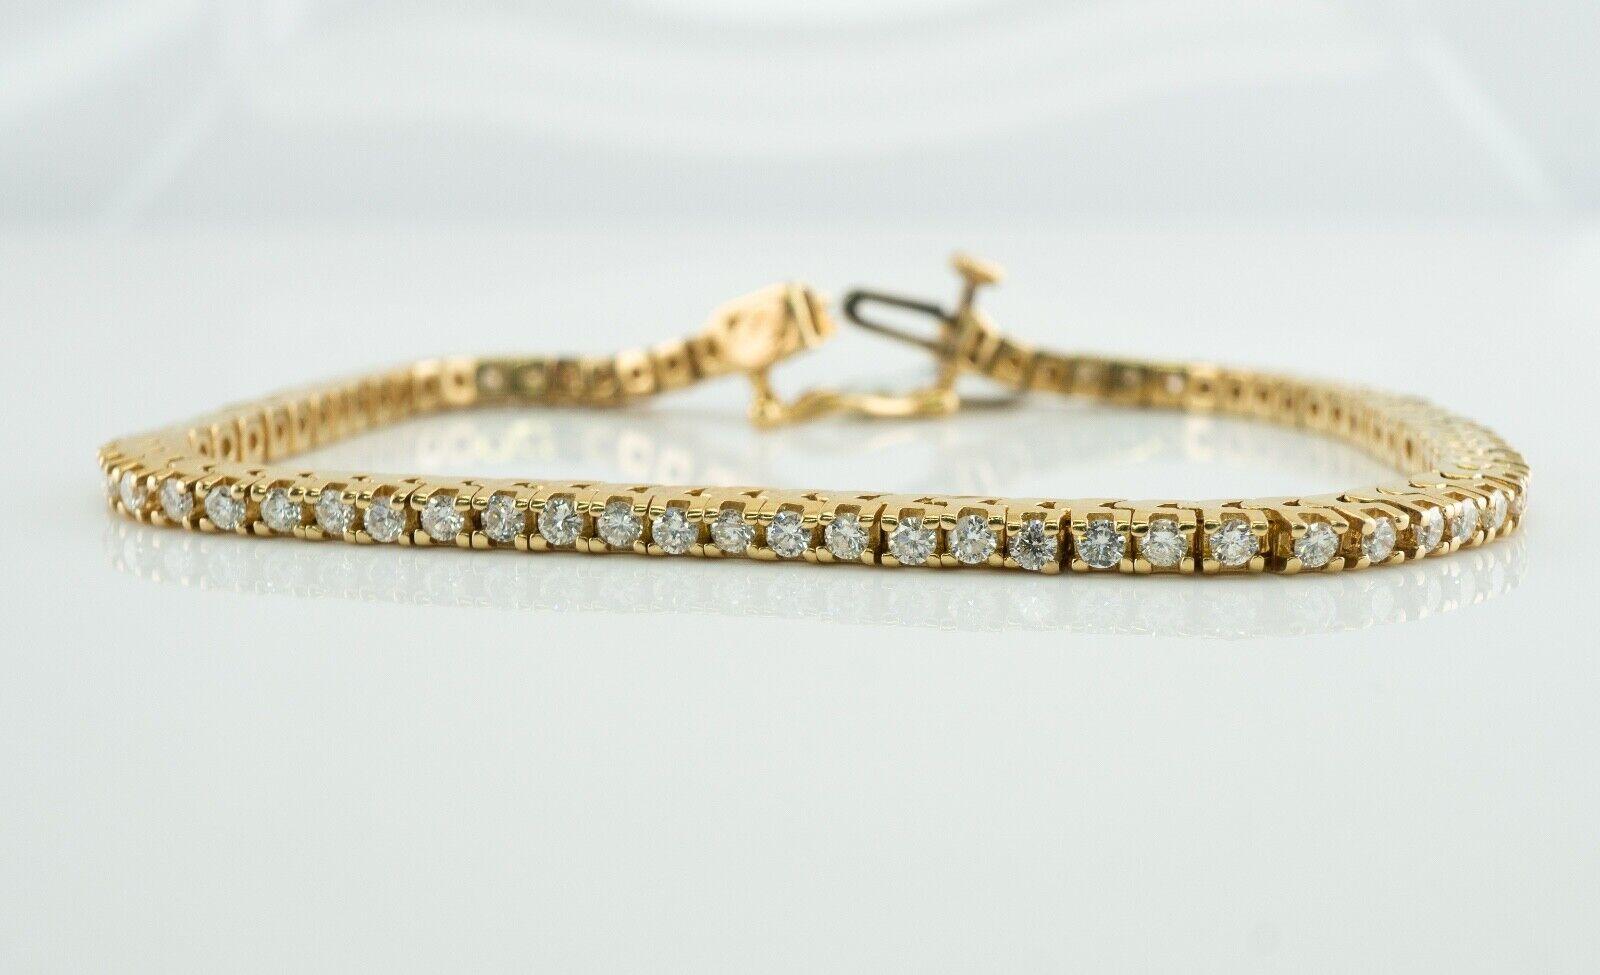 Bracelet tennis en or 14 carats avec étiquette TDW de 2,02 diamants naturels 5685 $

Ce magnifique bracelet de tennis fait partie d'une vente aux enchères. Il est réalisé en or jaune 14 carats massif et serti de diamants ronds de taille brillant,